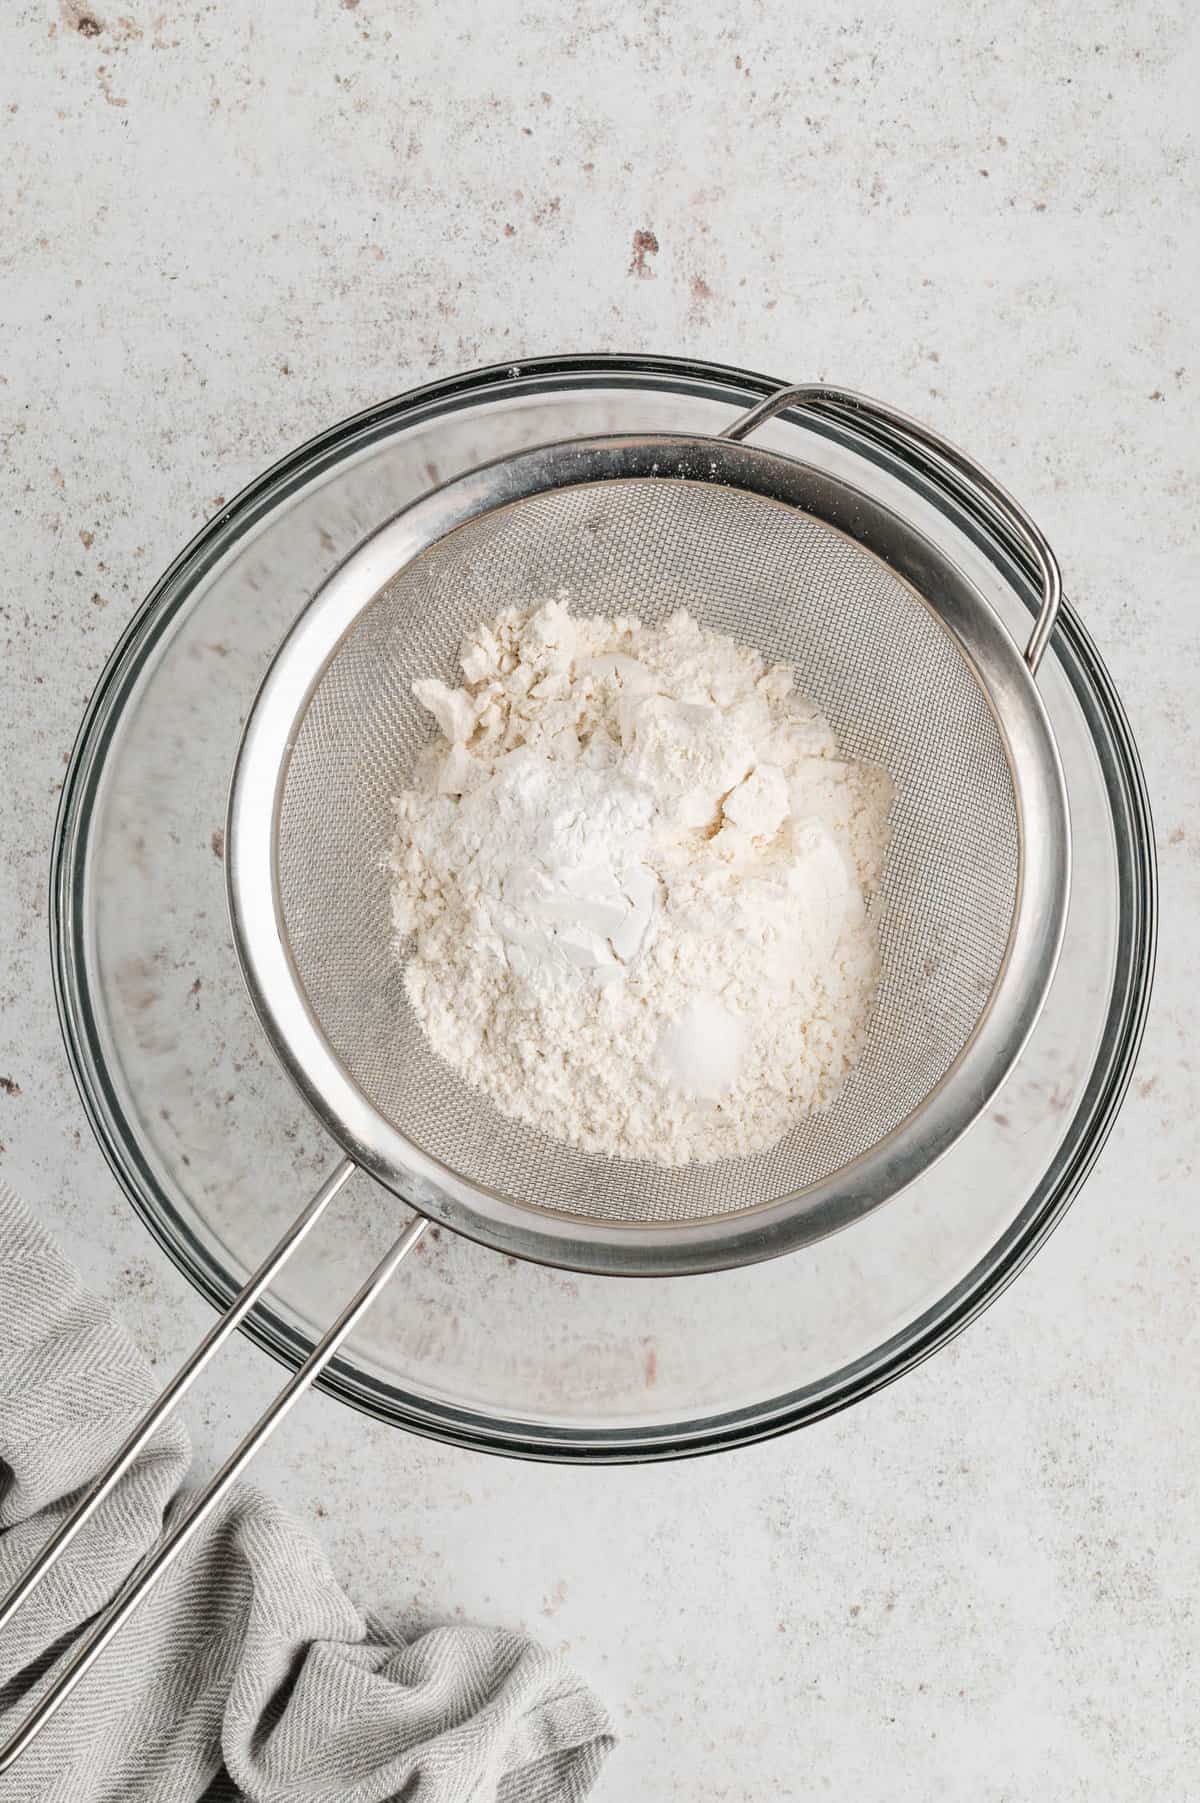 Sifting dry ingredients in mixing bowl for Pancake Recipe